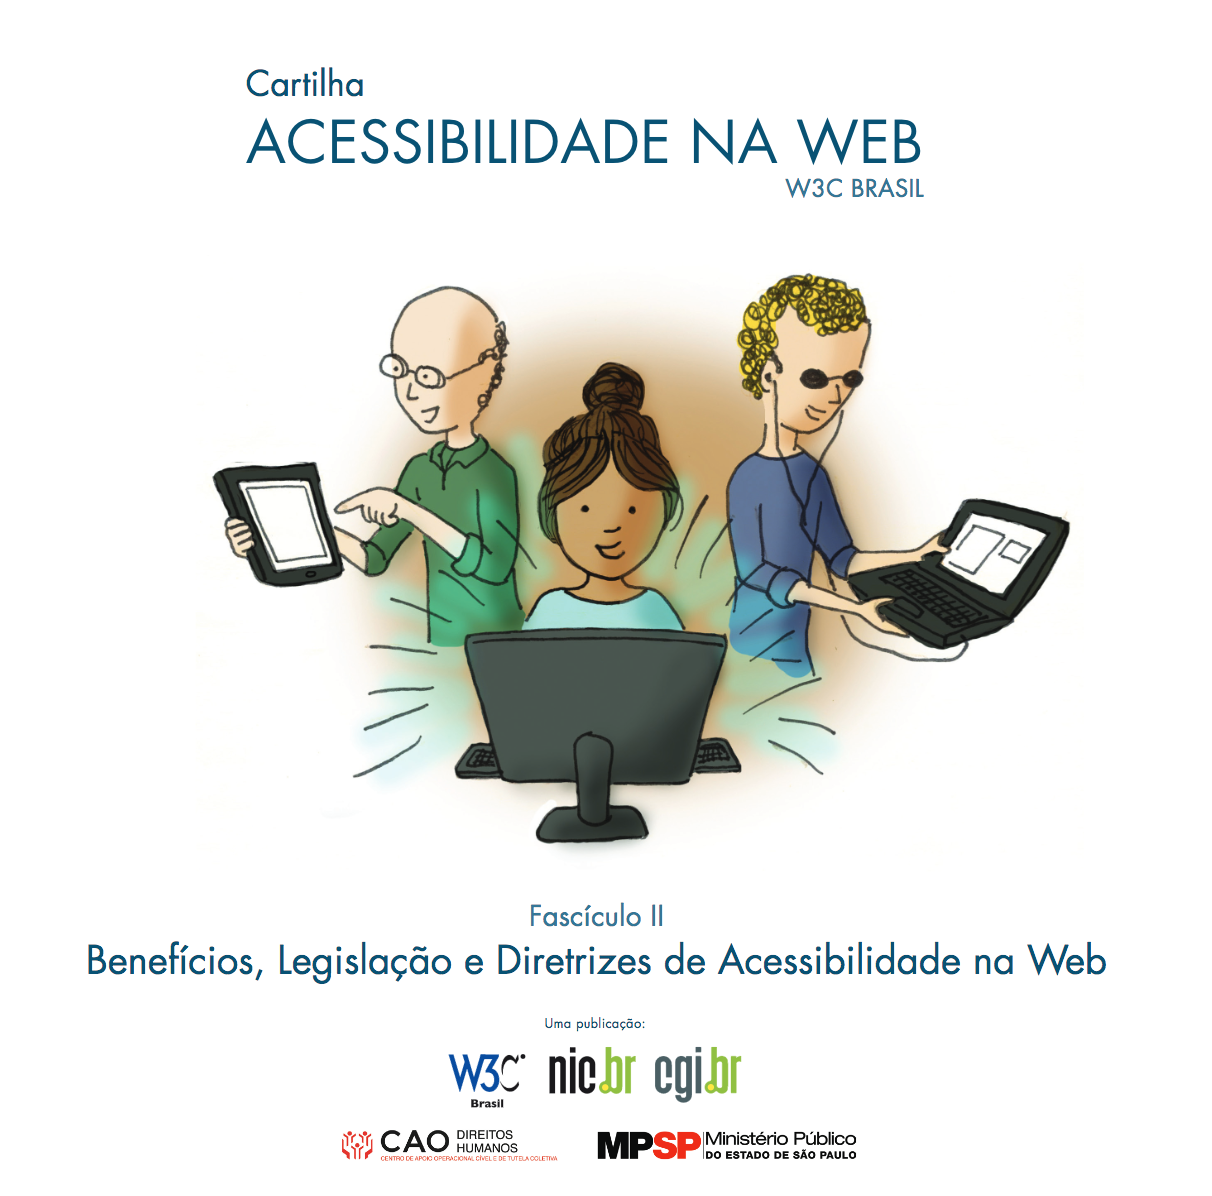  Cartilha de Acessibilidade na Web (Fascículo II)